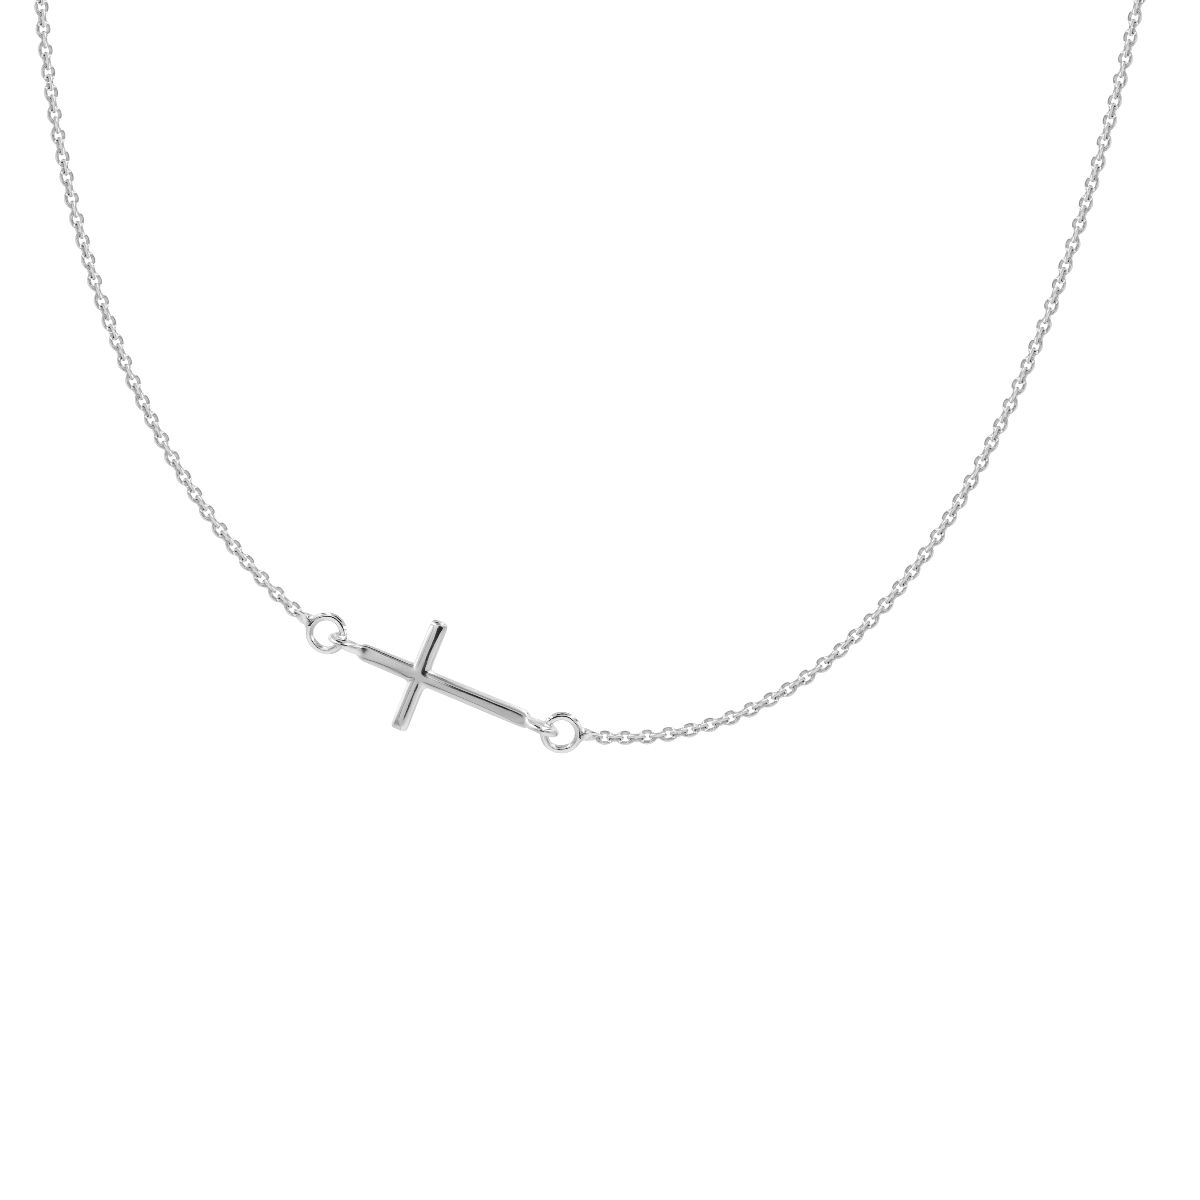 Halskette Kreuz silber